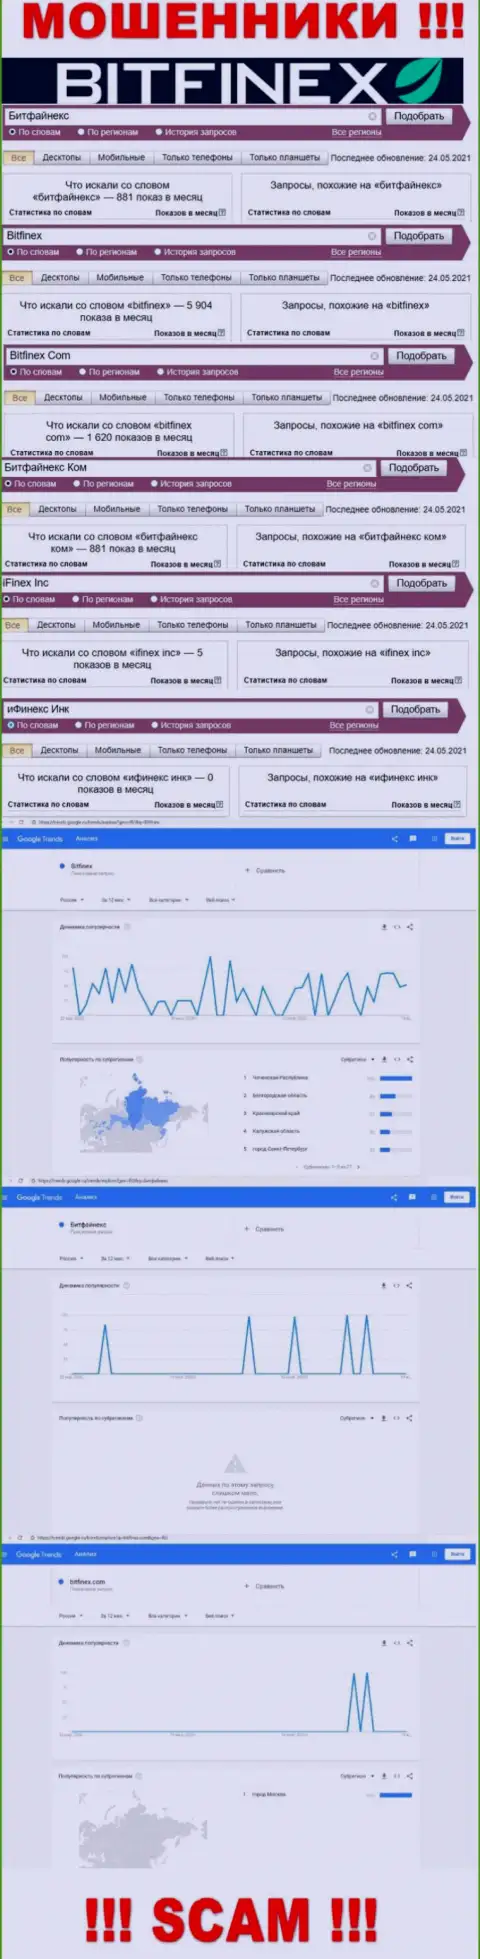 Количество поисковых запросов в поисковиках глобальной internet сети по бренду воров Битфинекс Ком